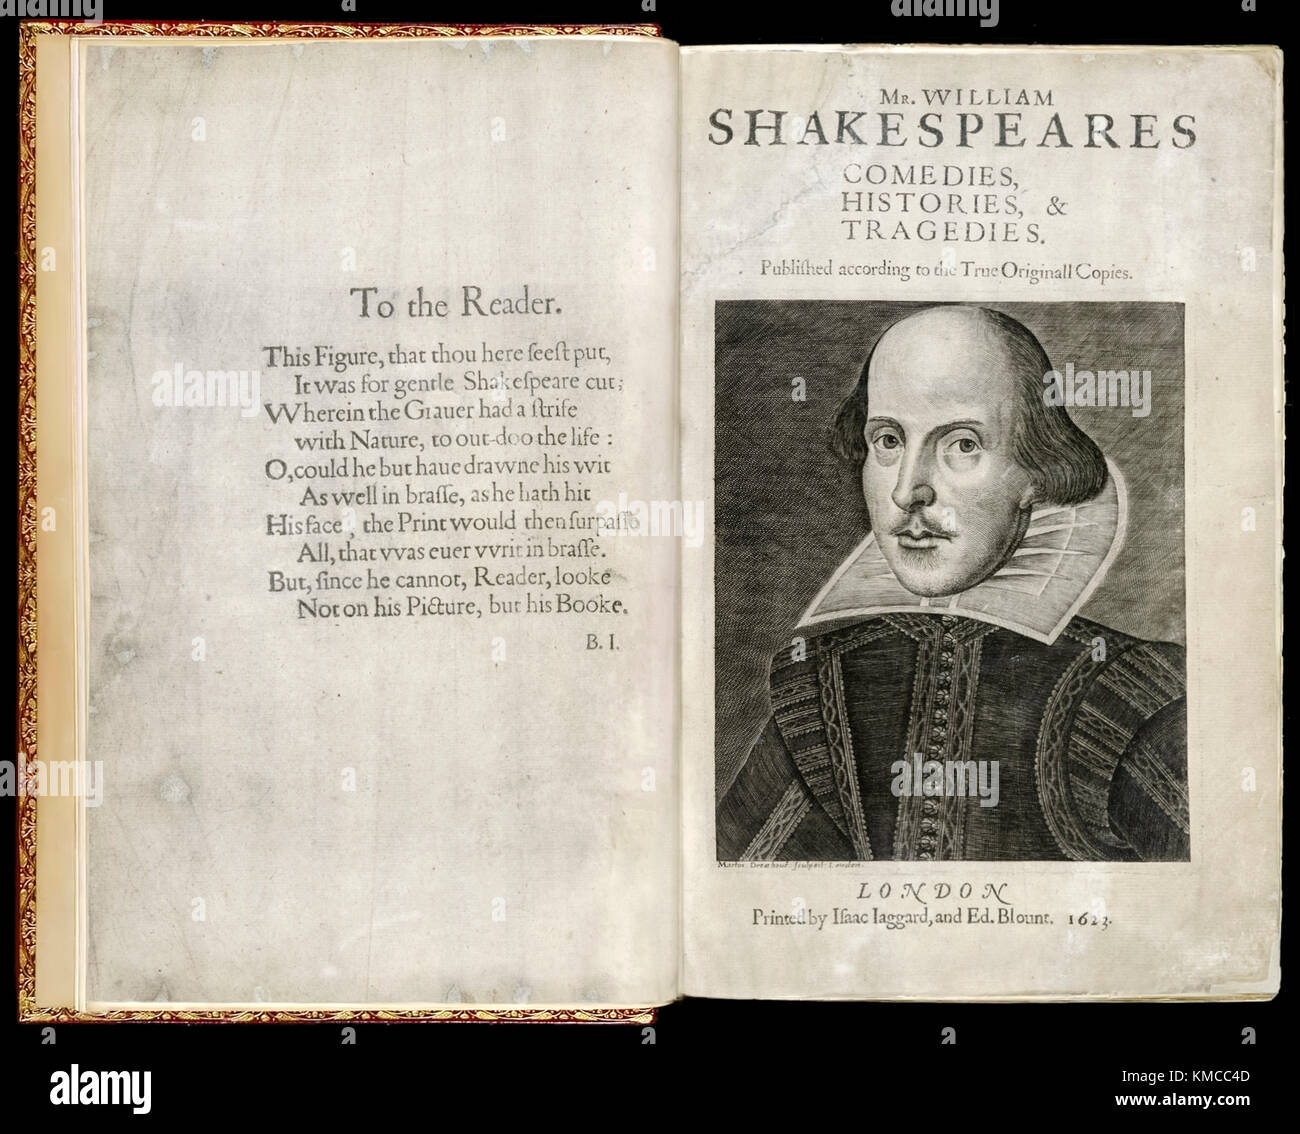 Titre de la première 'Folio' la première édition de ses oeuvres recueillies "M. William Shakespeares Comedies, Histories, & tragédies" d'abord publié en 1623, gravure de William Shakespeare (1564-1616) par Martin Droeshout (1601-1650). Banque D'Images